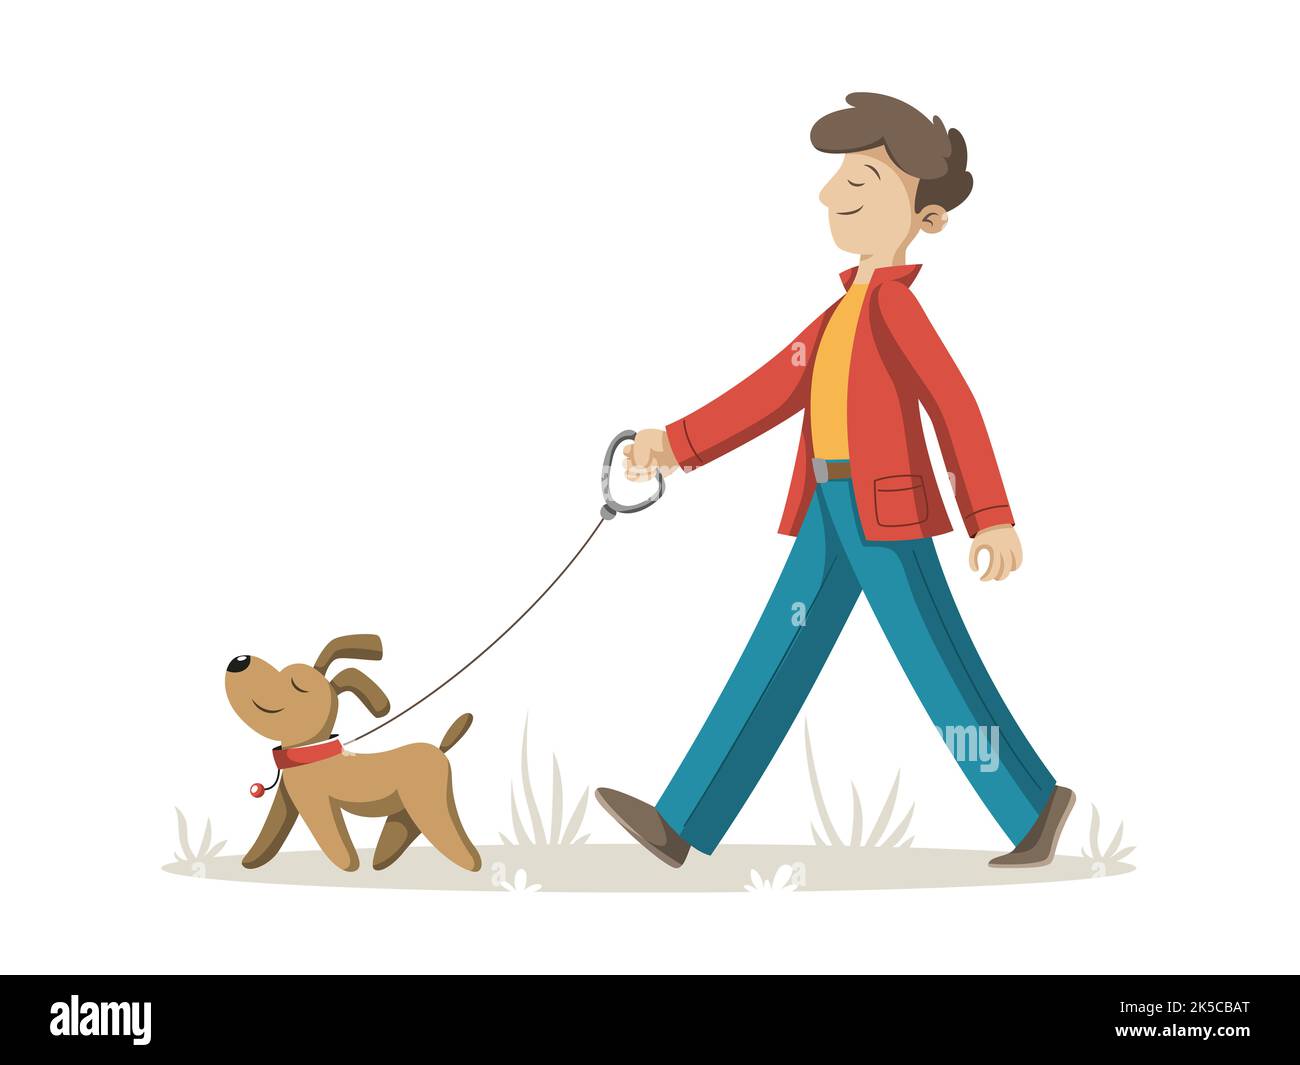 L'homme marche avec son chien. Illustration dans un style de dessin animé moderne. Banque D'Images